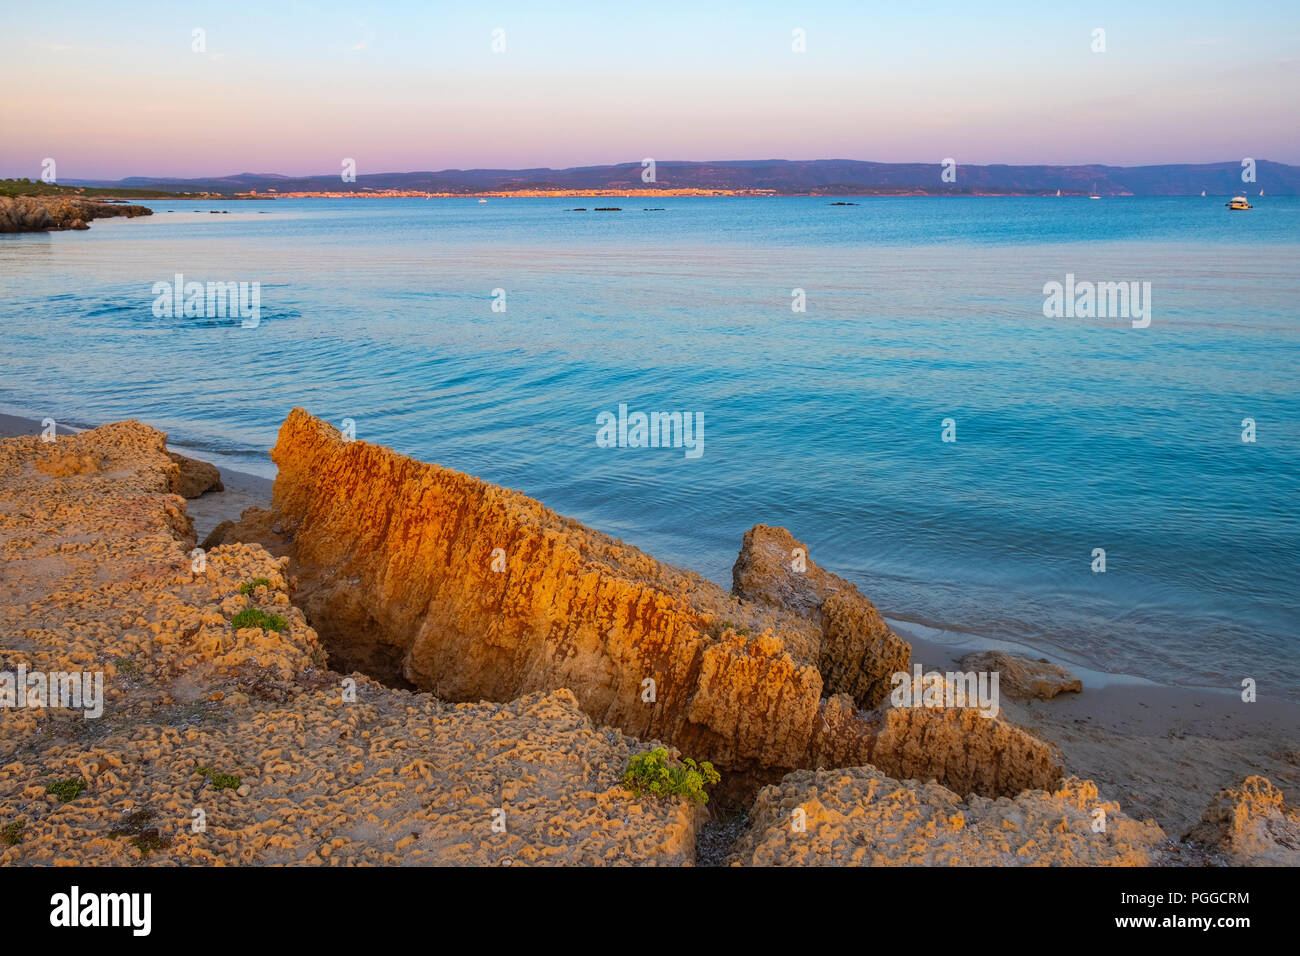 Alghero, Sardinia / Italy - 2018/08/11: Panoramic view of the Spiaggia di Lazzaretto beach at the Gulf of Alghero in the Porto Conte Regional Park Stock Photo